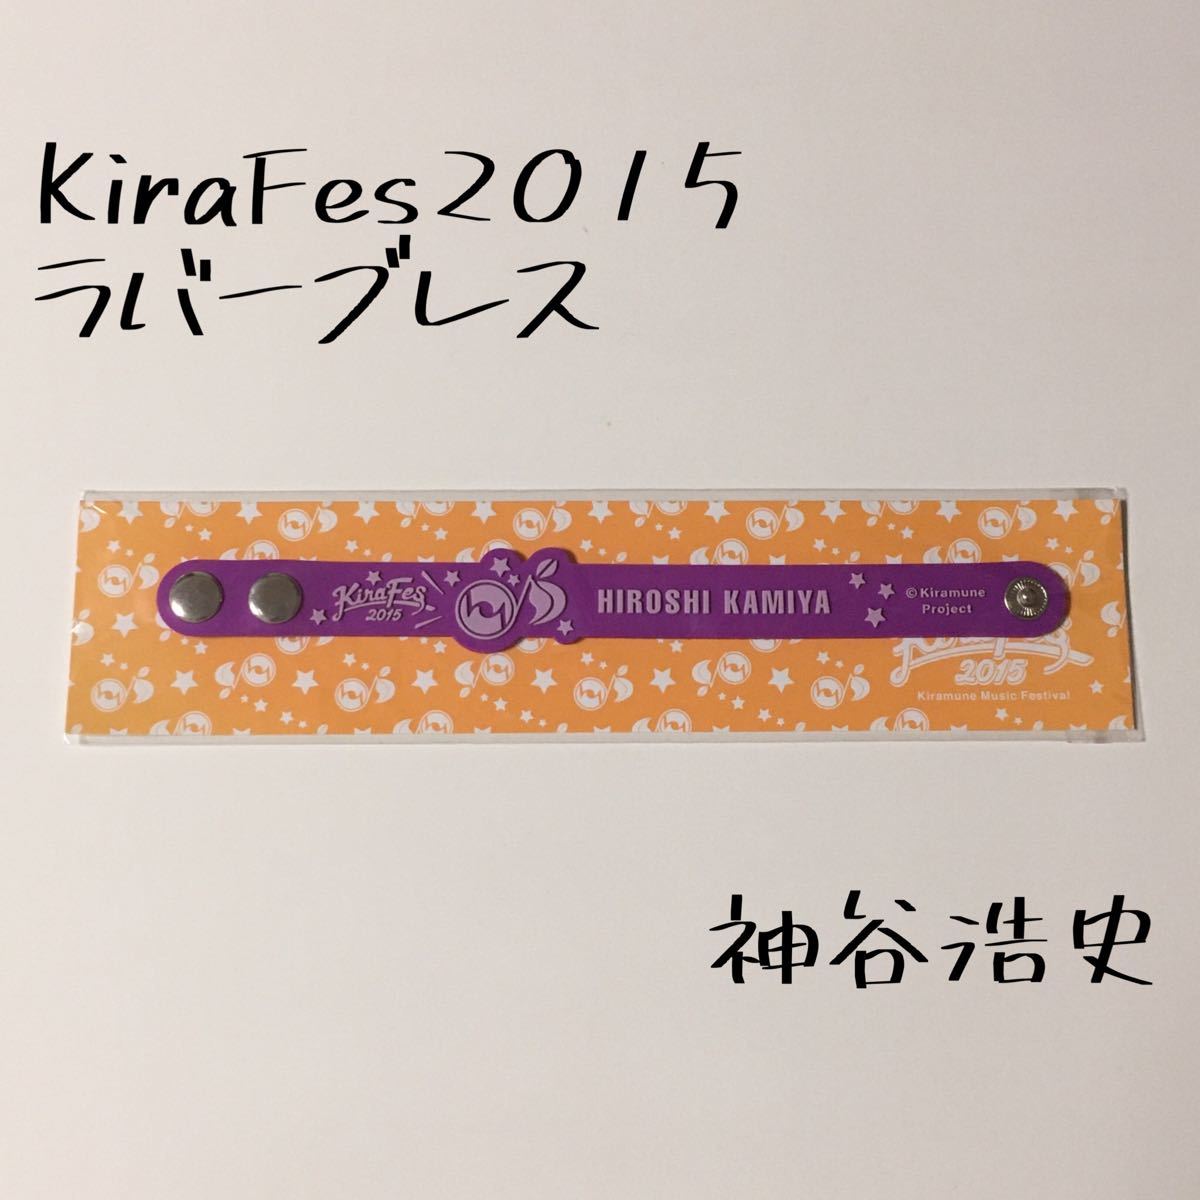 Kiramune キラミューン 神谷浩史 ブレスレット 腕輪 声優 グッズ KAmiYU KiraFes 2015 キラフェス